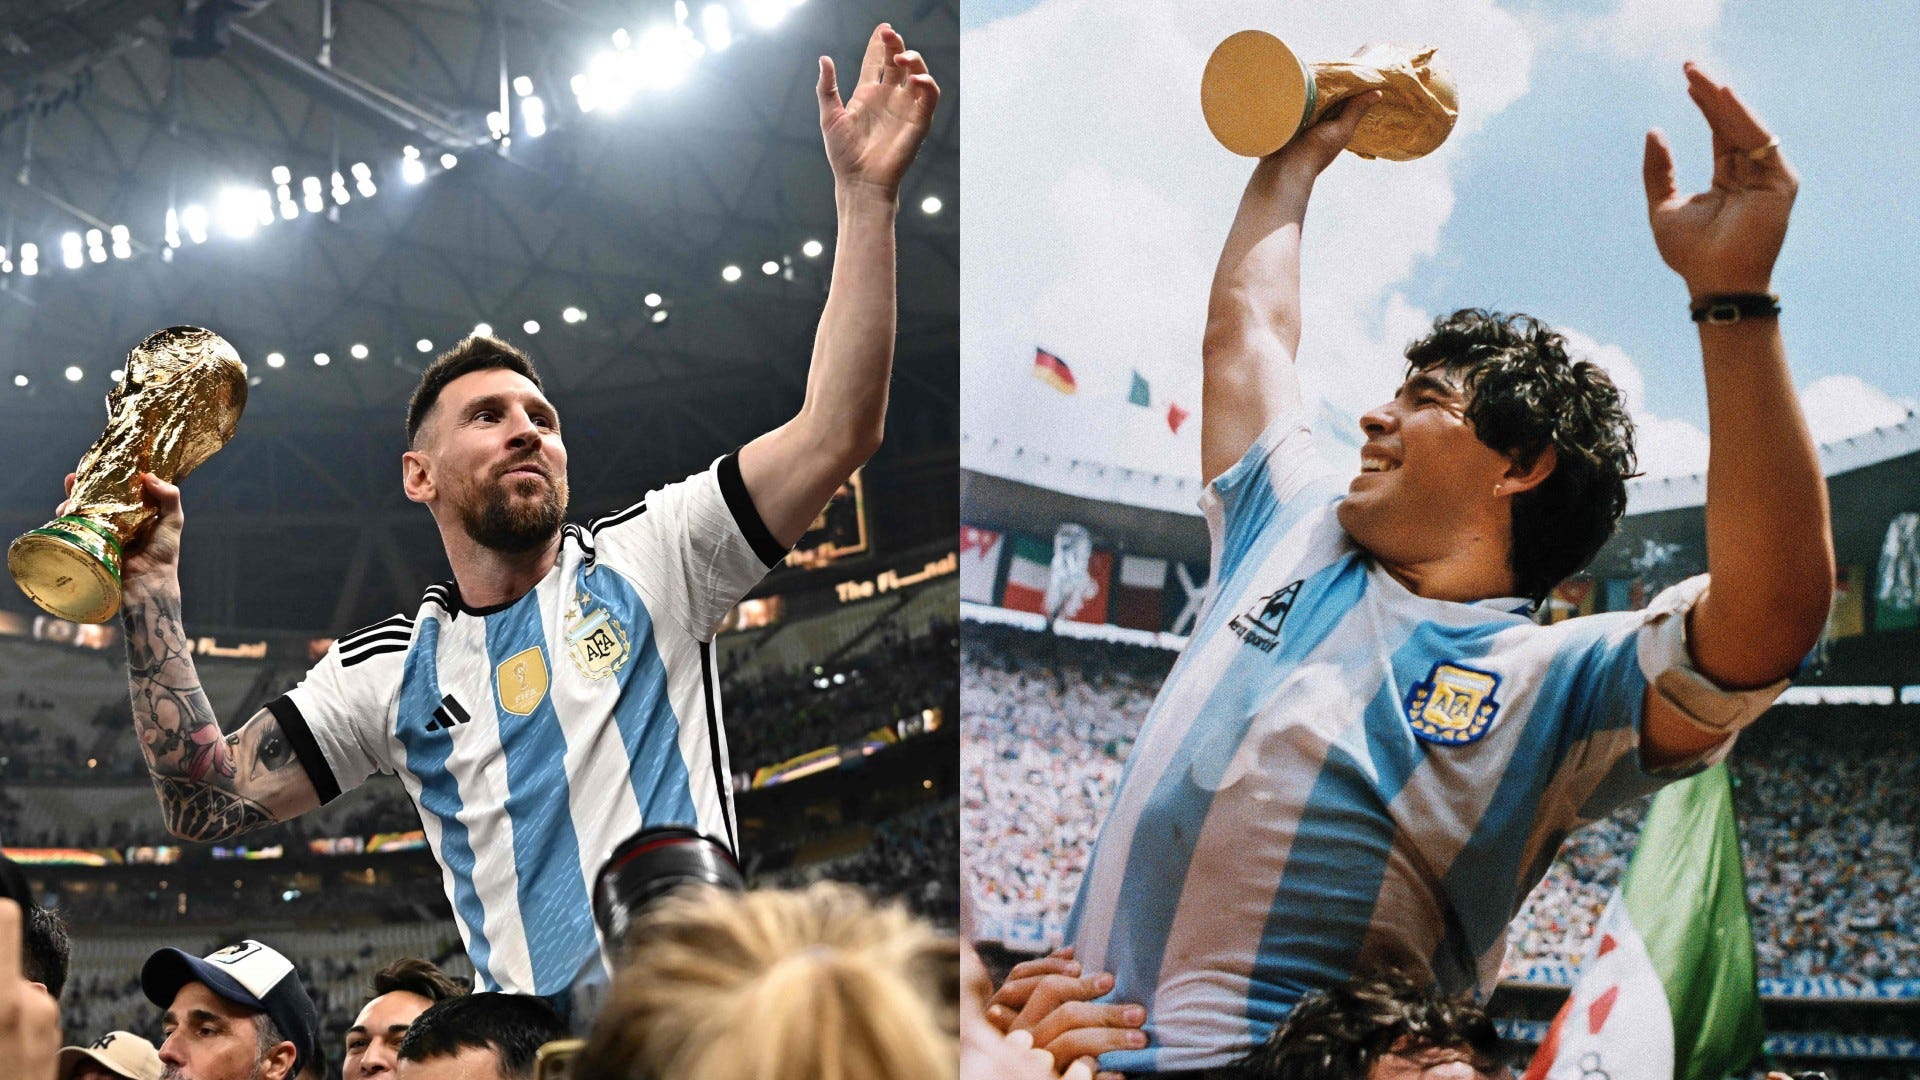 Messi đã trở thành một trong những cầu thủ hàng đầu của thế giới, và trong video tôn vinh Maradona, anh đã thể hiện tình cảm và sự kính trọng đến một trong những thần tượng của mình. Xem video này để cảm nhận được tình cảm mãnh liệt giữa Messi và Maradona.